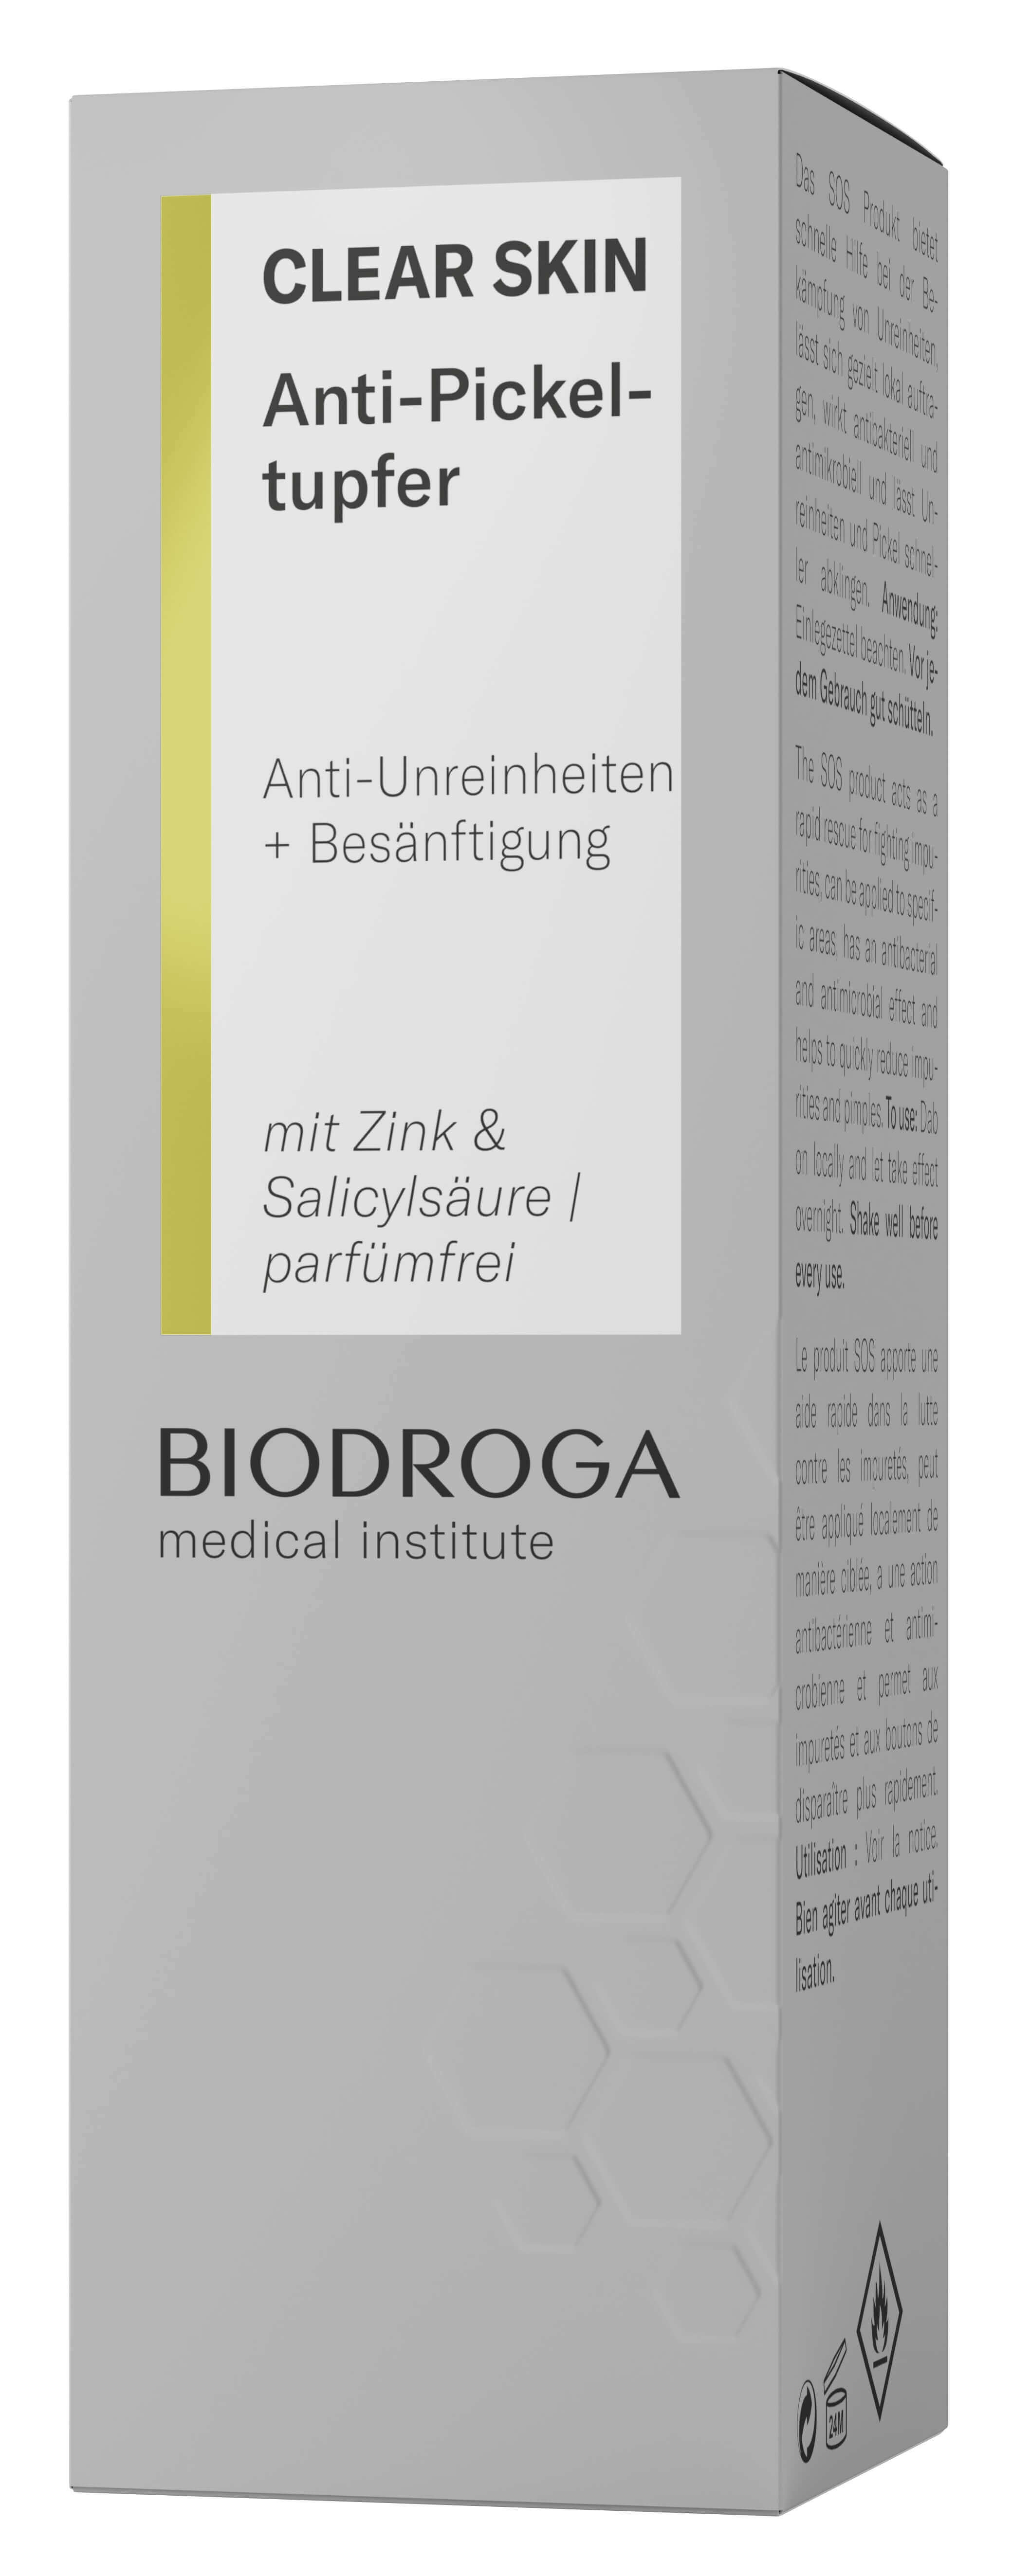 Biodroga Medical Institute Clear Skin Anti-Pickeltupfer 5 ml